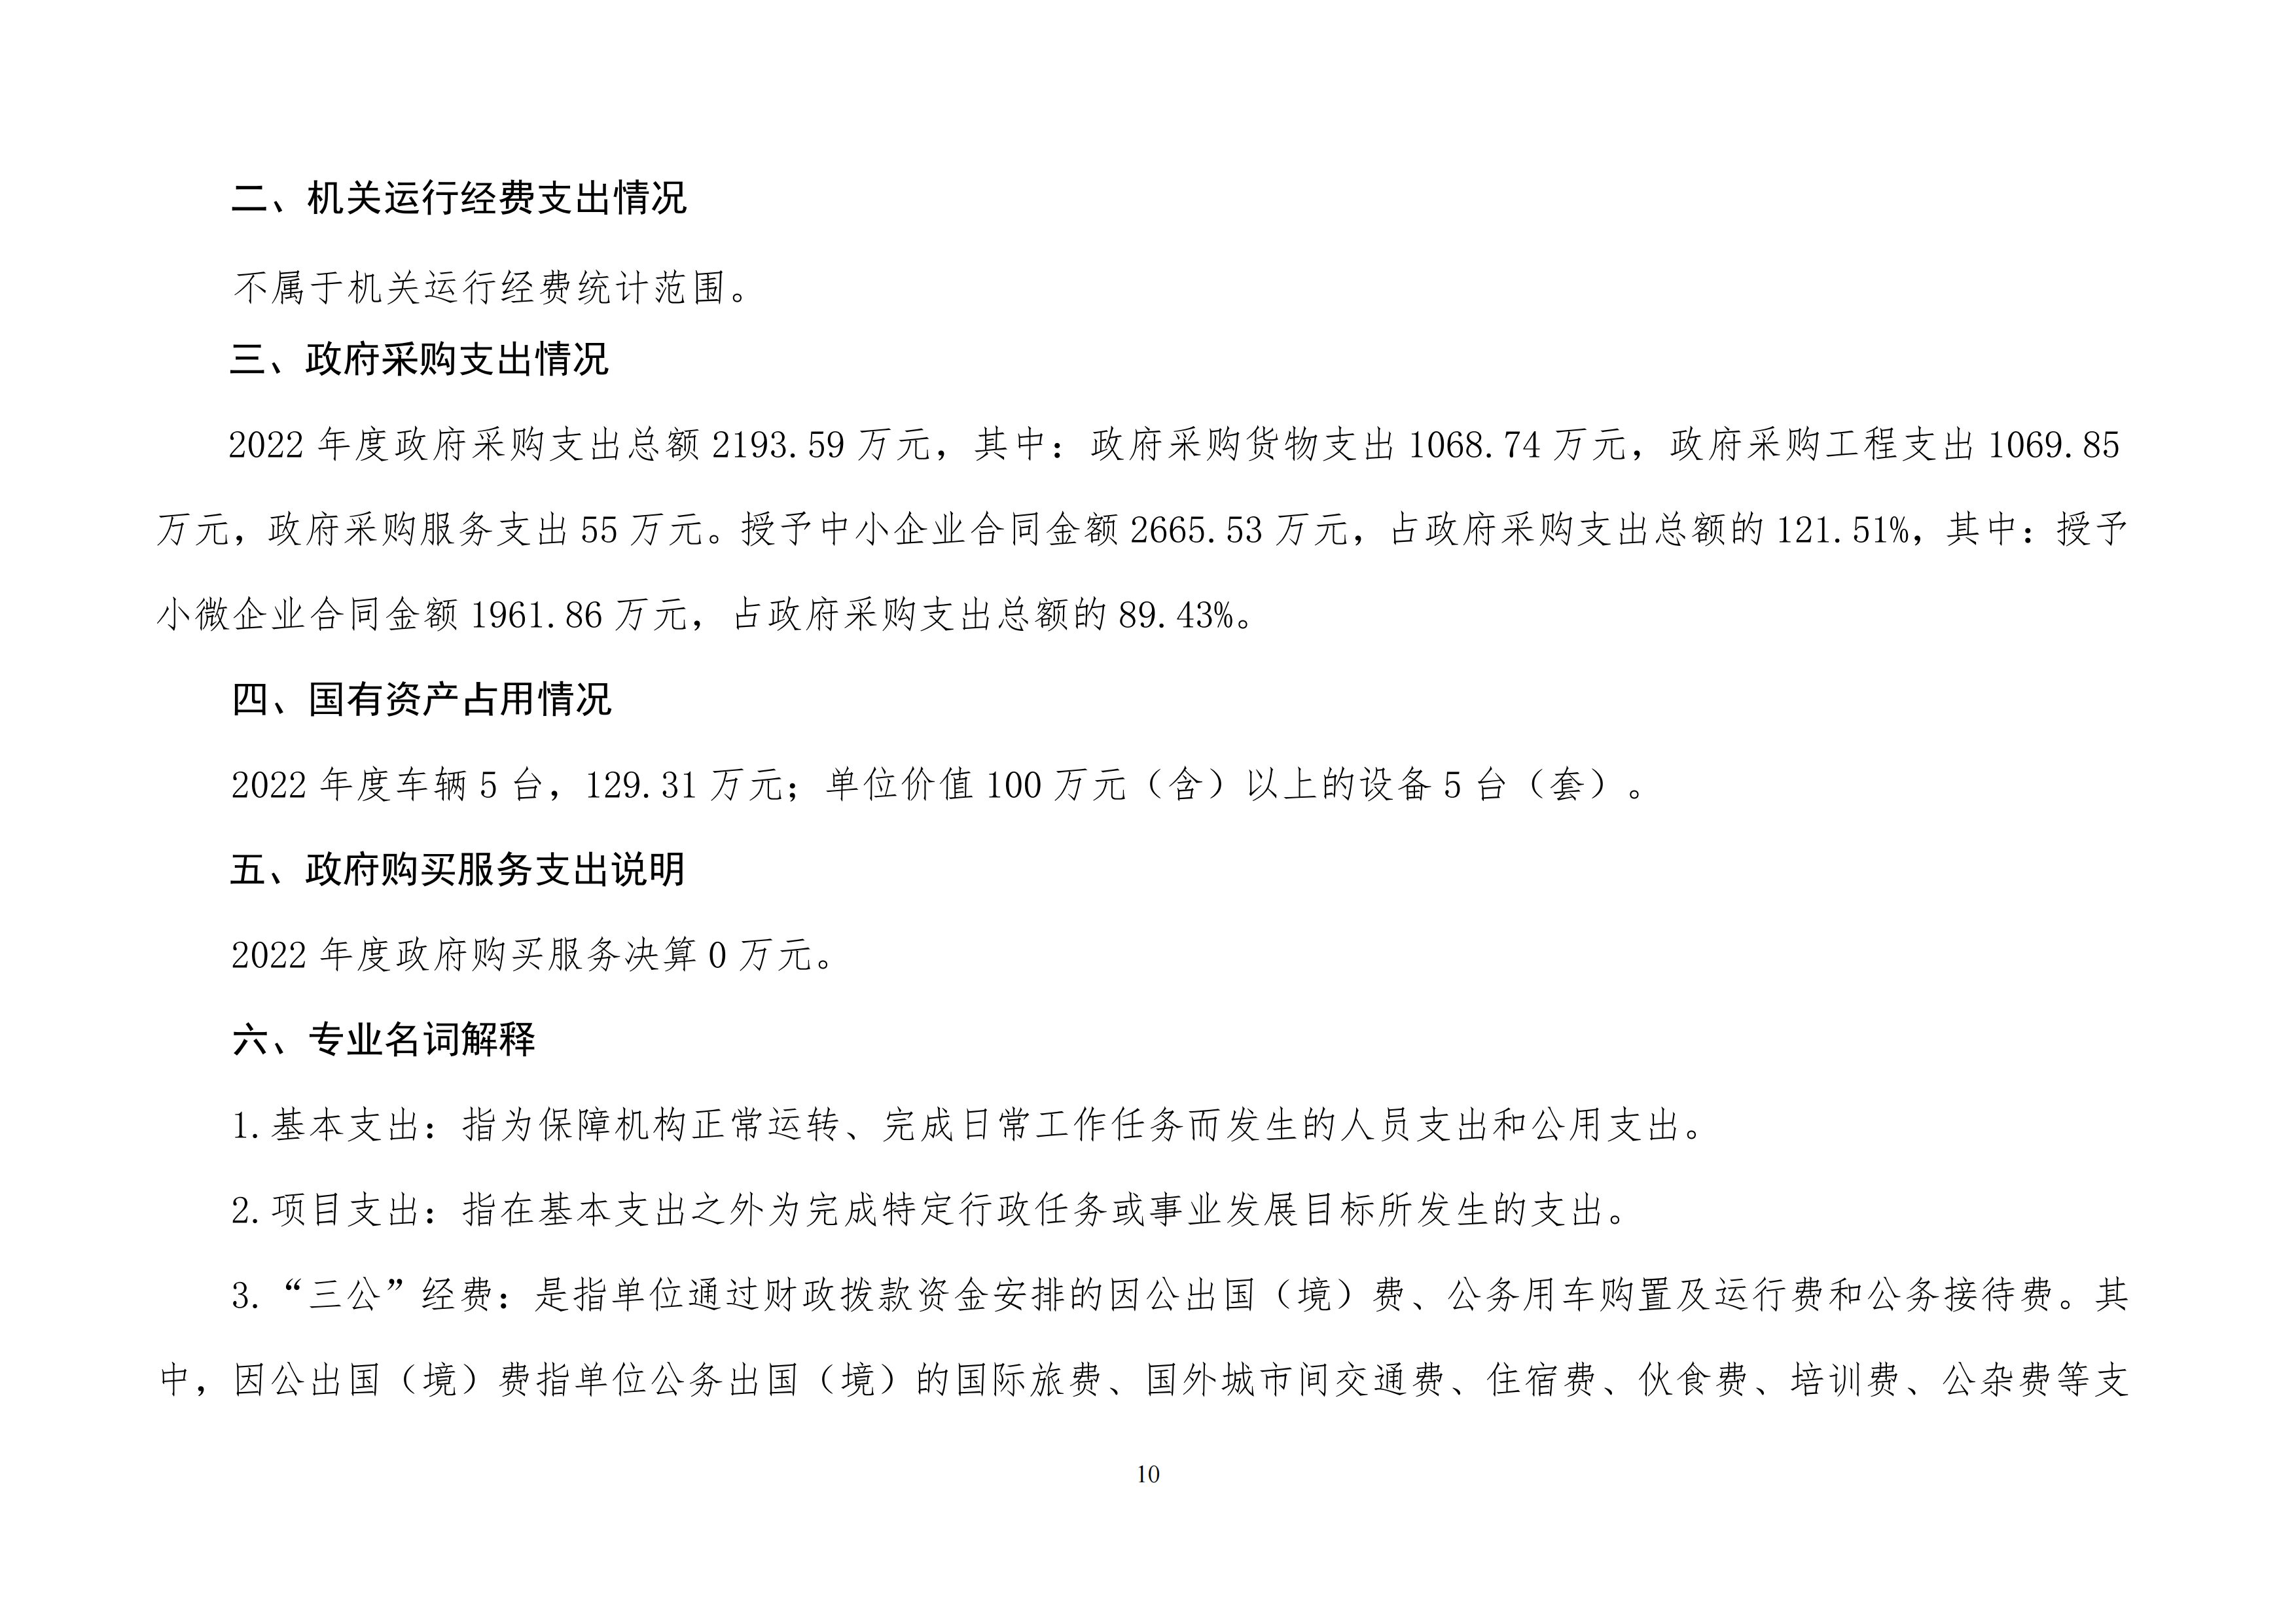 北京市工贸技师学院2022年度部门决算公开_09.png